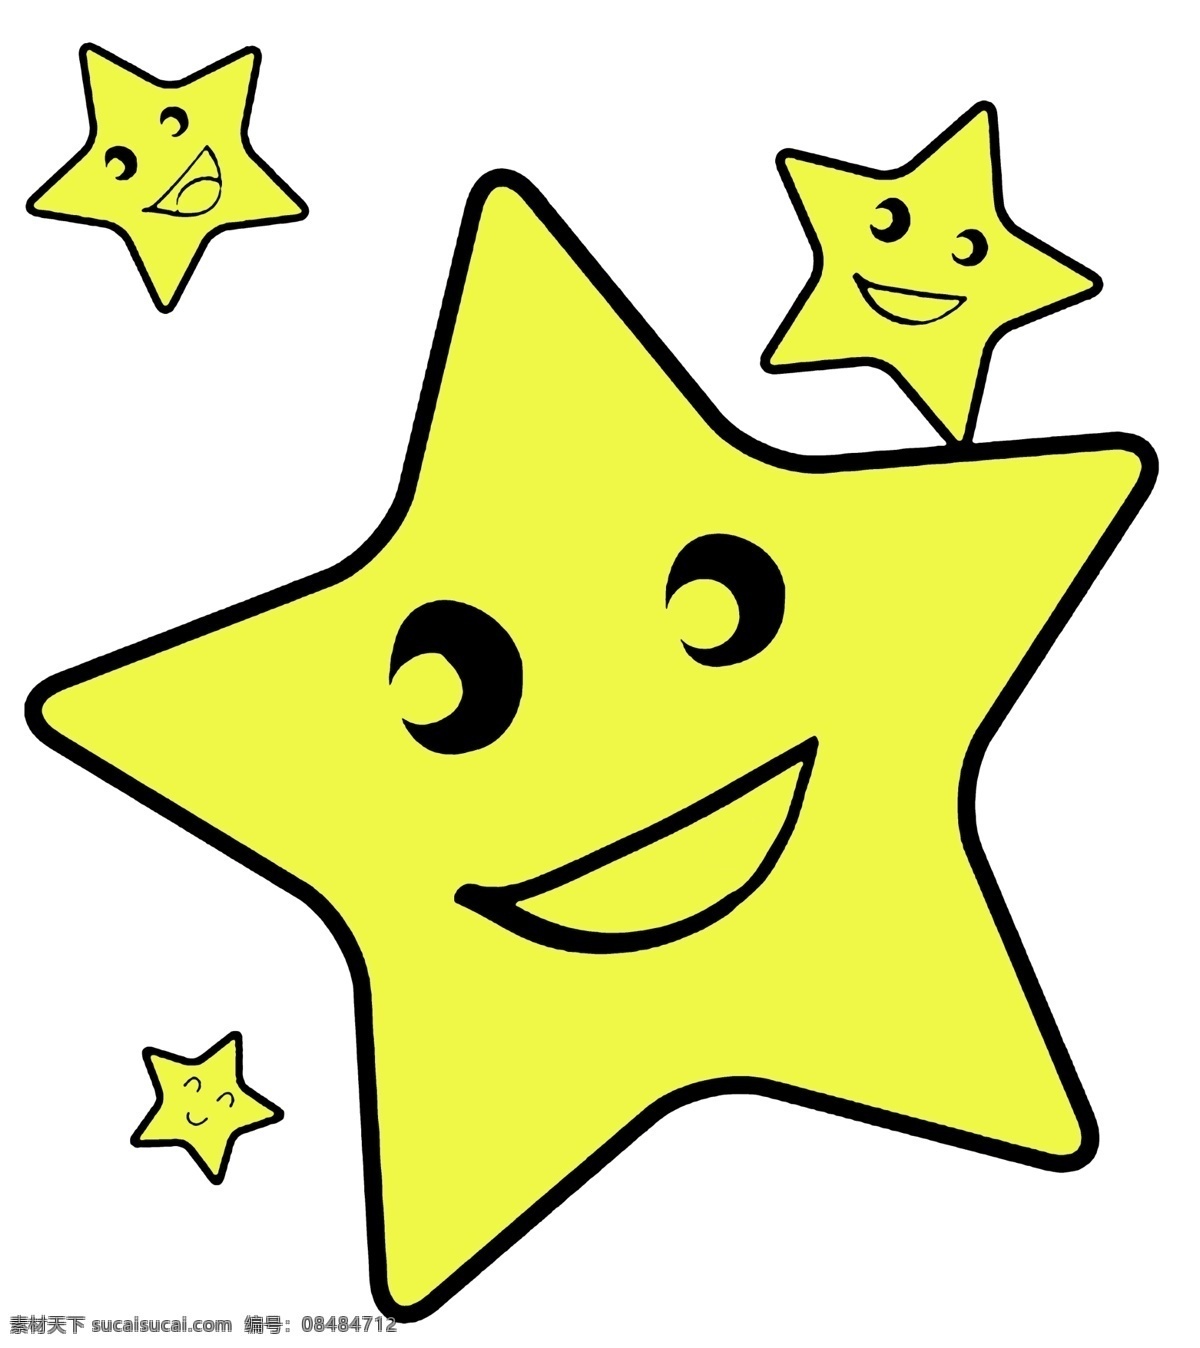 小星星 矢量图 花型 黄色的星星 动漫动画